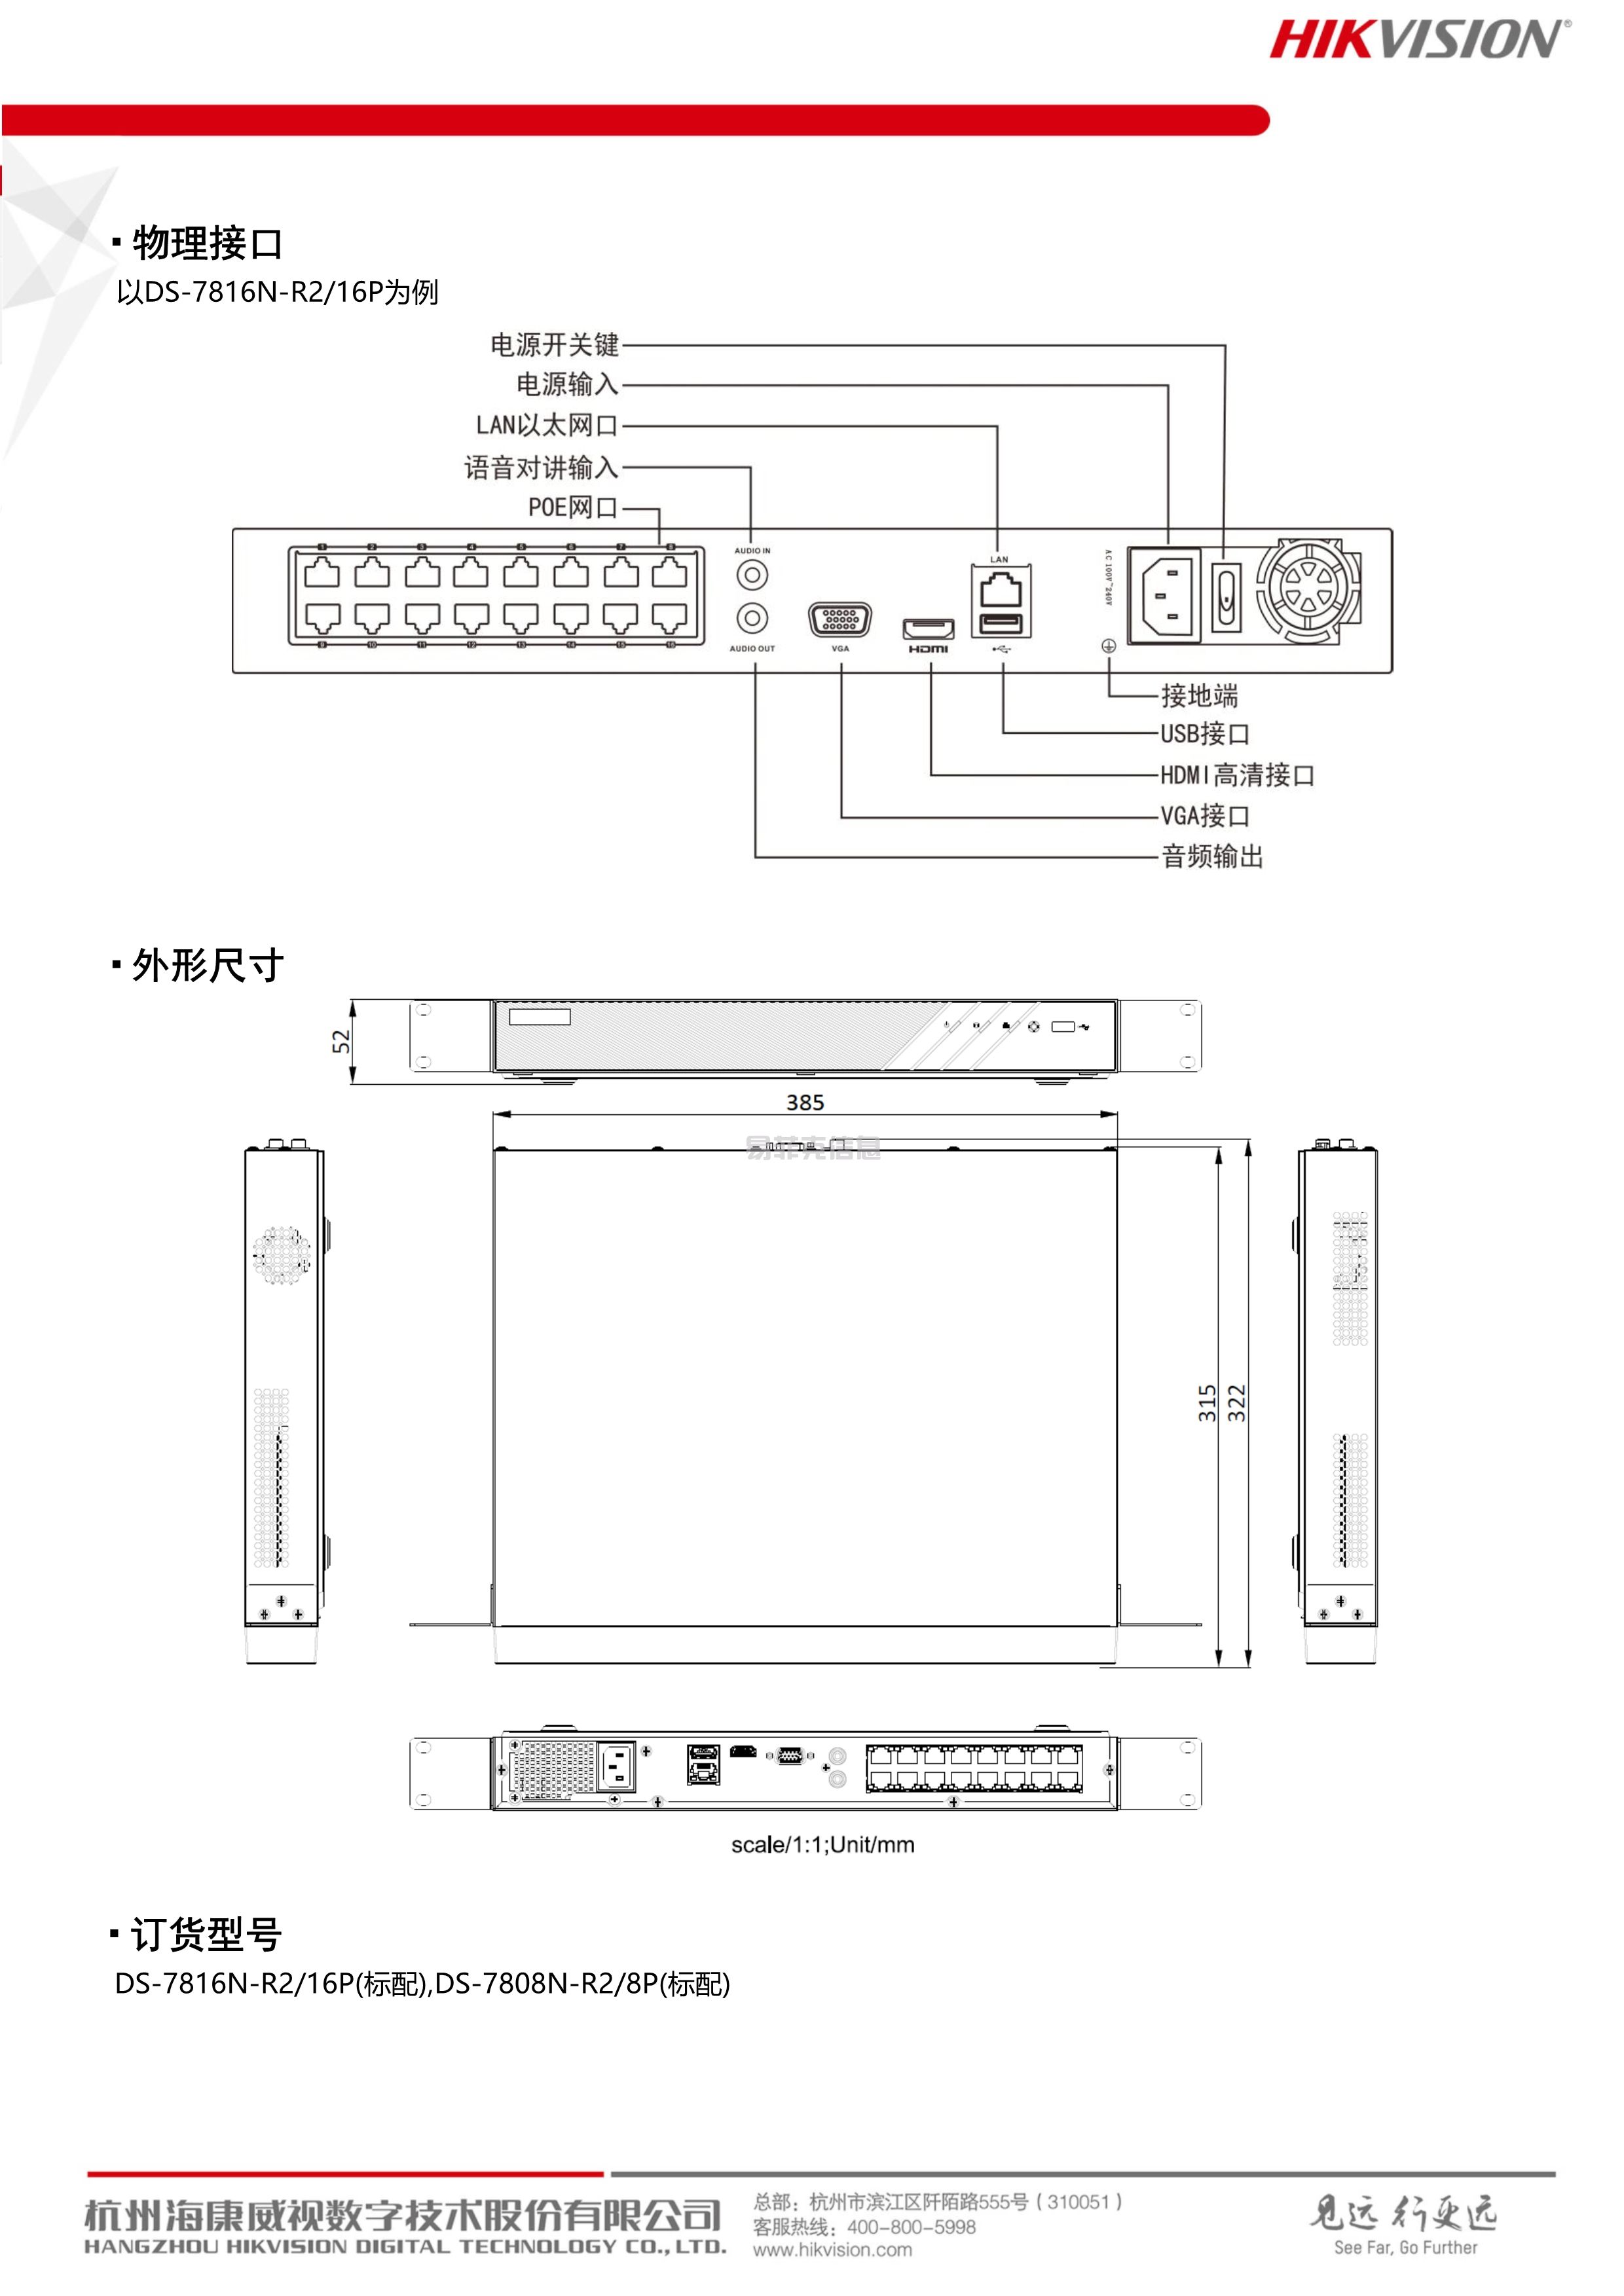 硬盘录像机(NVR)/DS-7808N-R2/8P(图3)